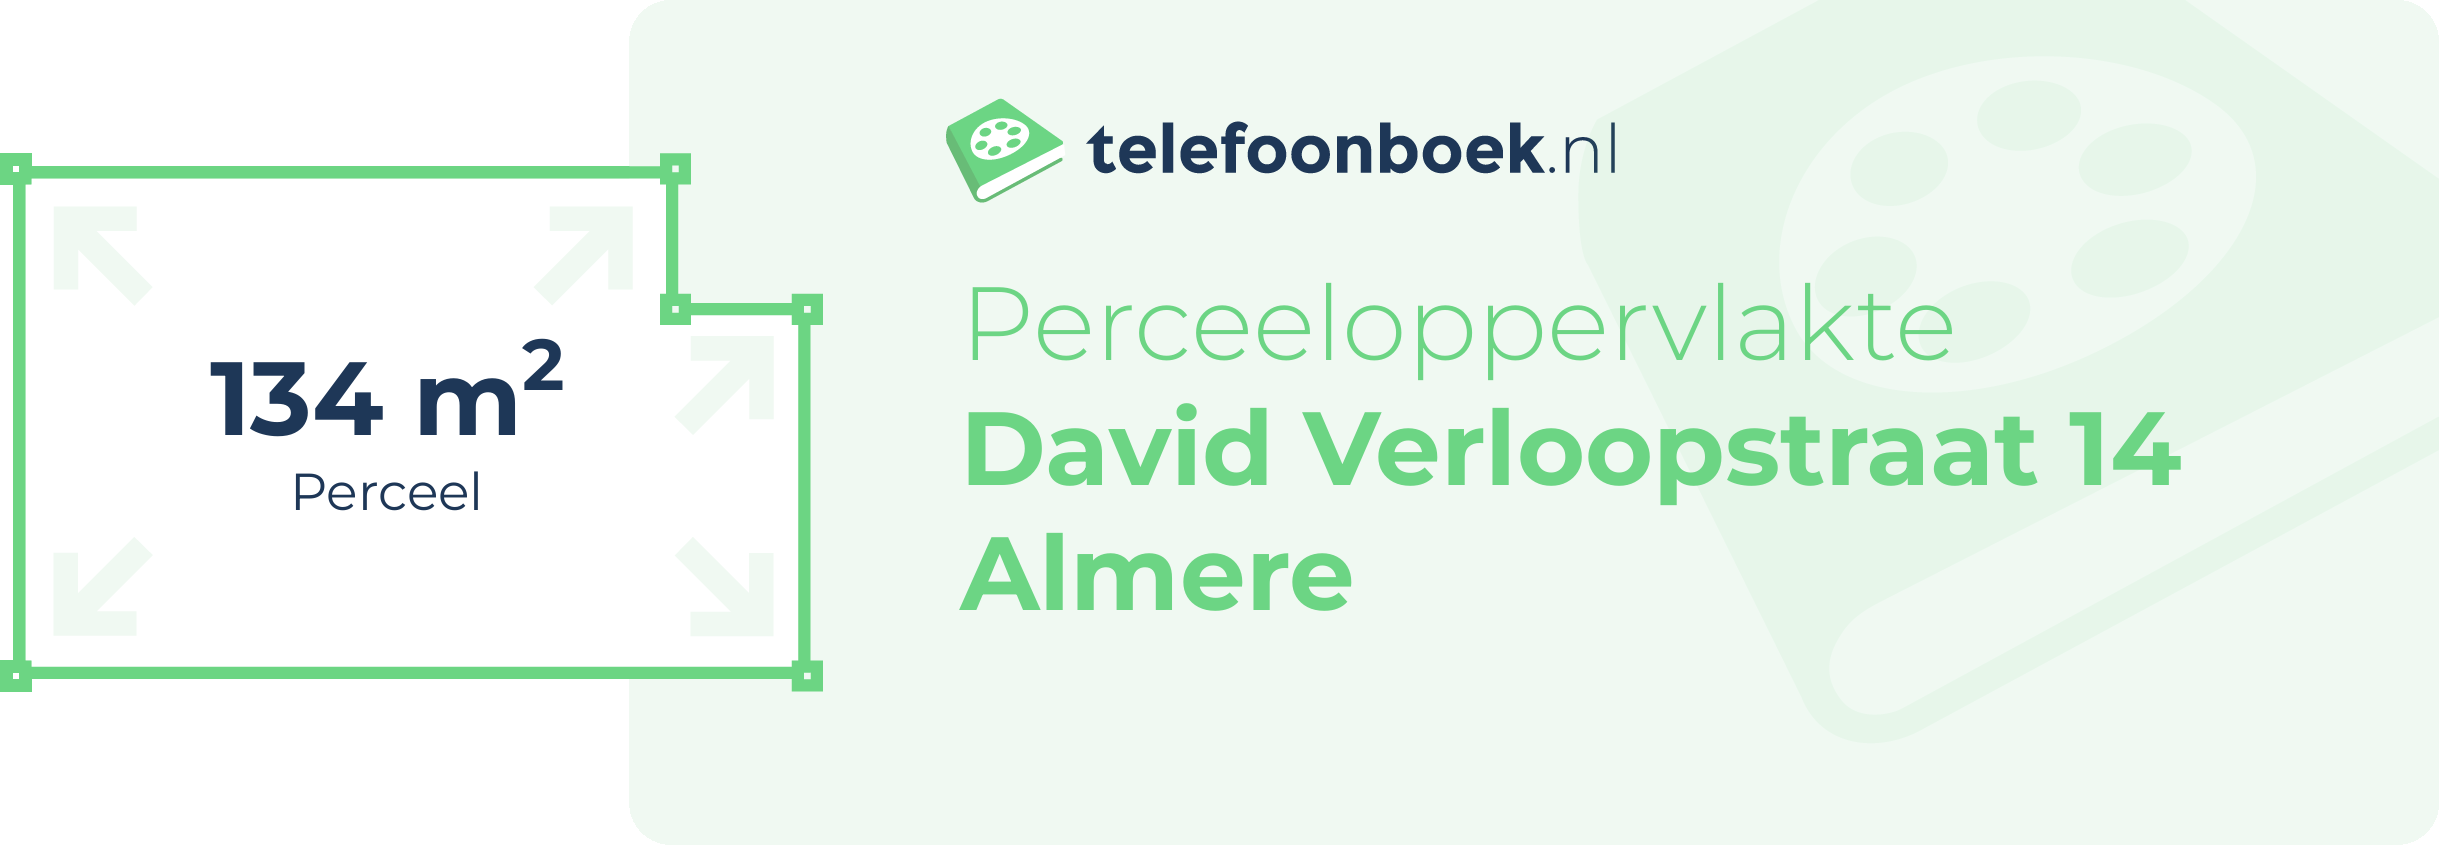 Perceeloppervlakte David Verloopstraat 14 Almere